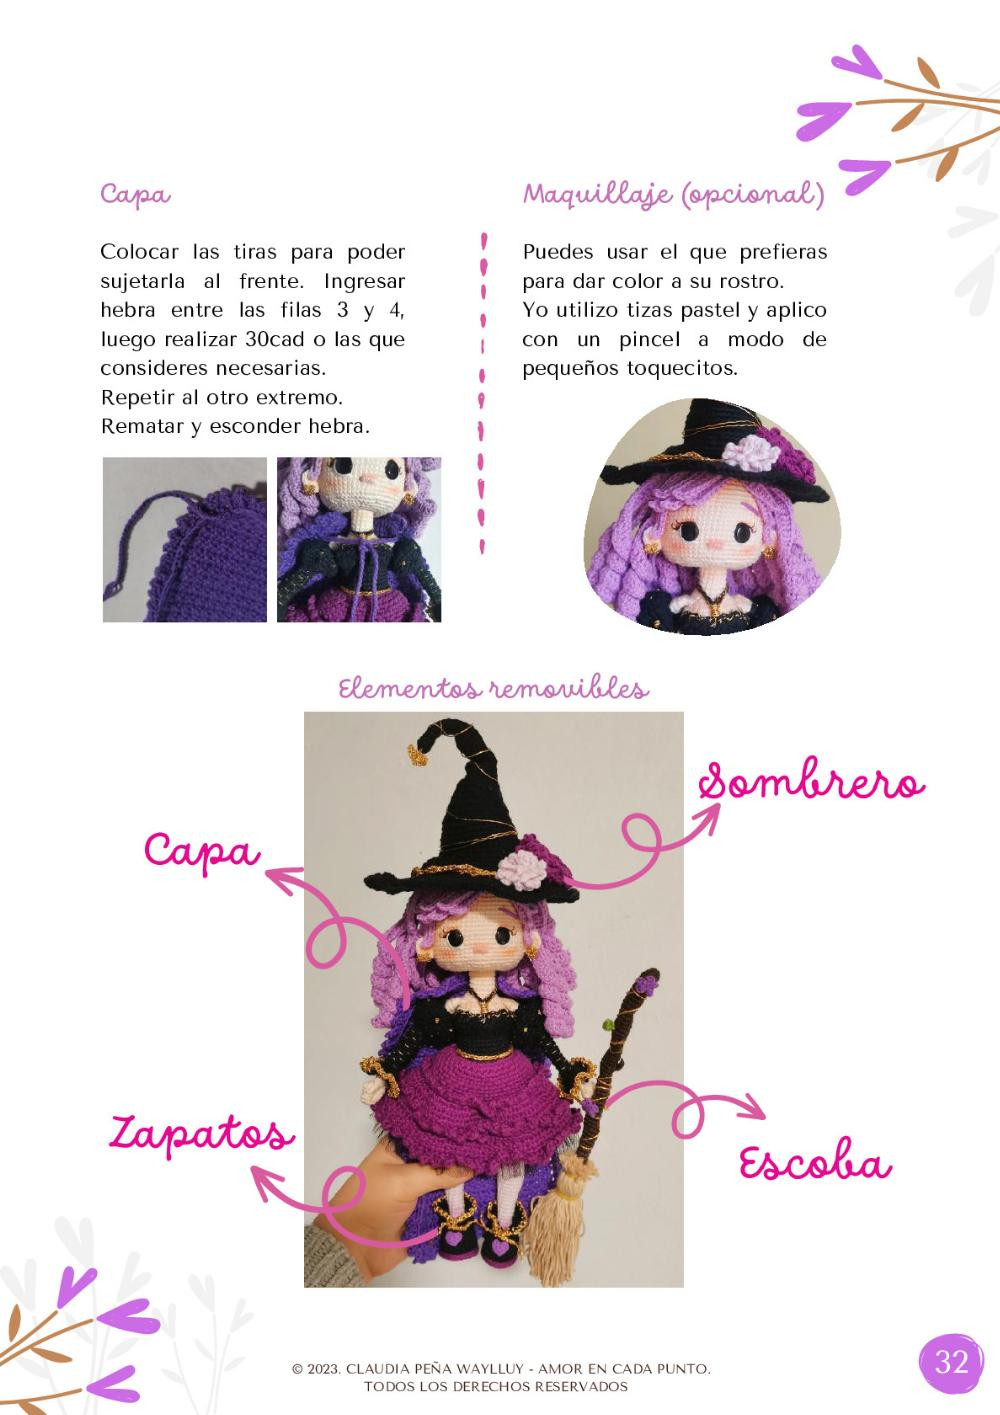 ¡Este tutorial de crochet de bruja con sombrero puntiagudo es perfecto para Halloween!